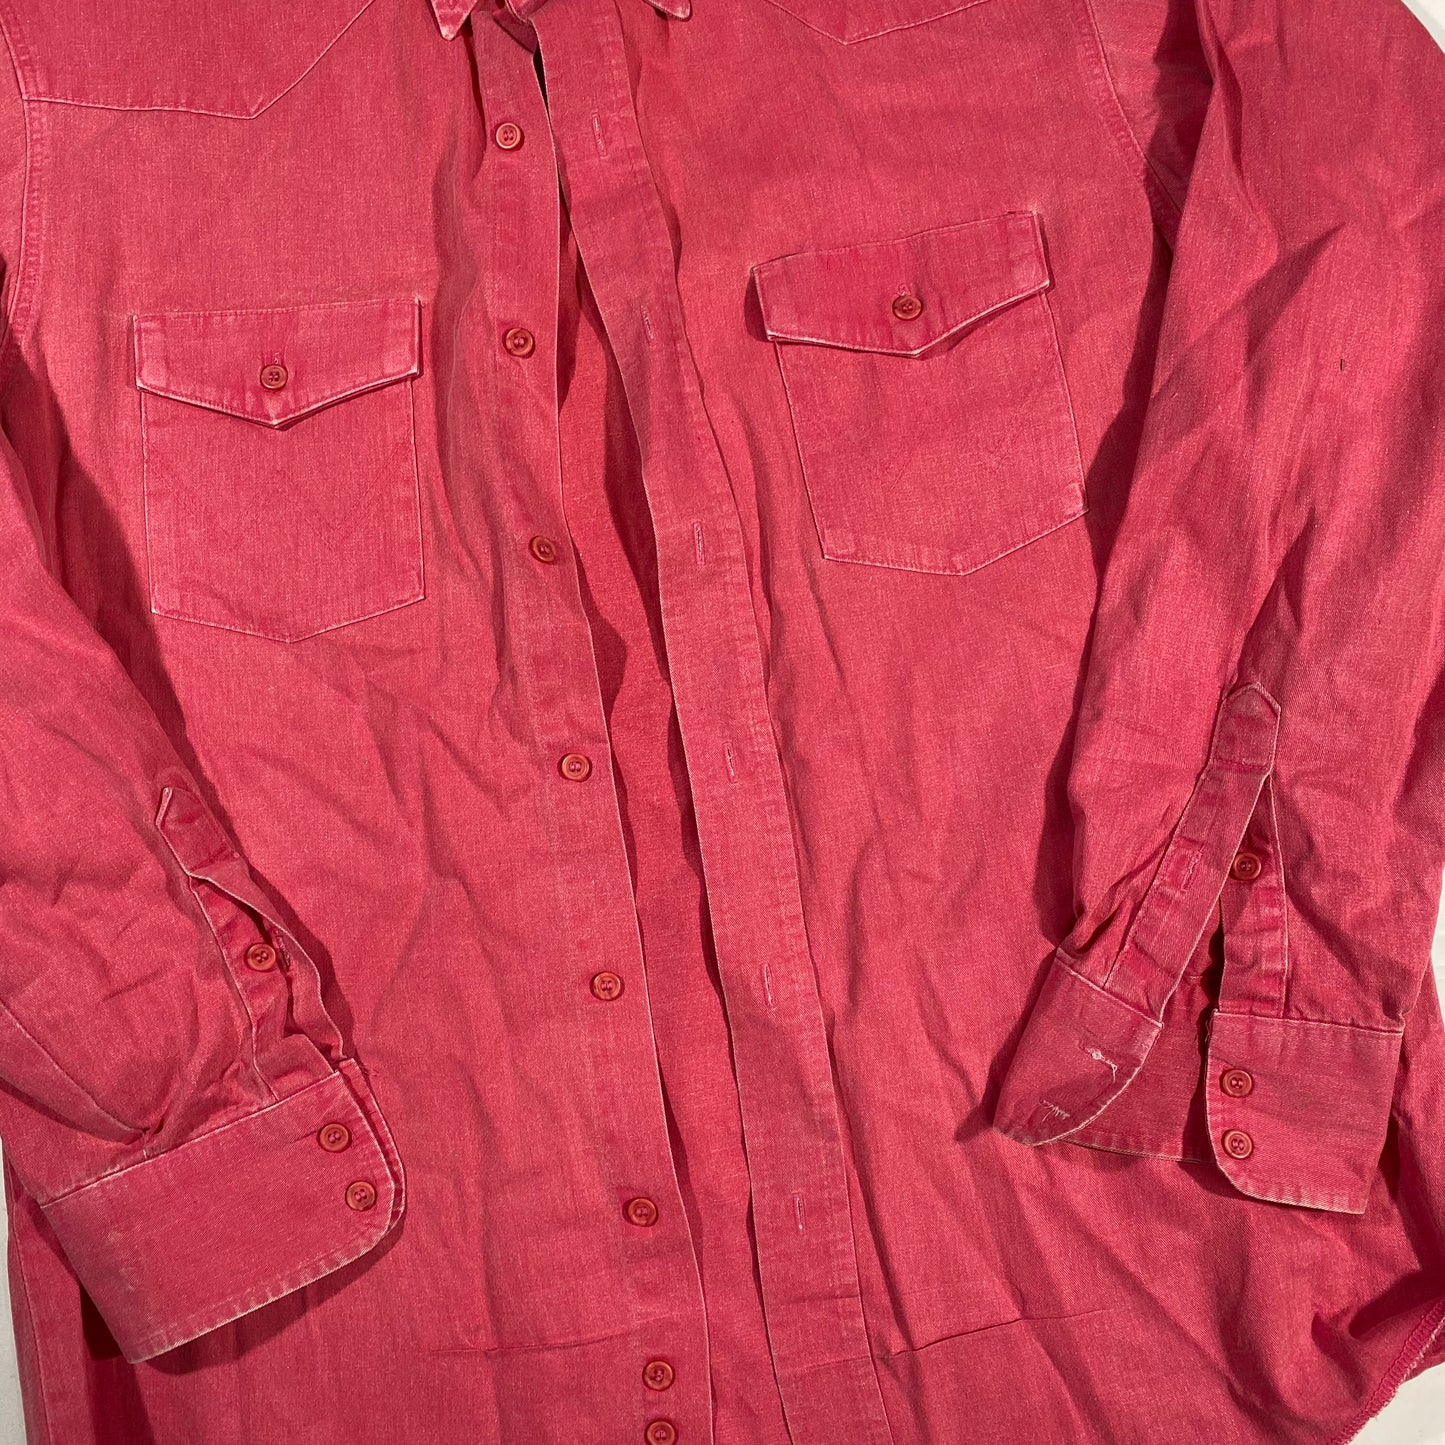 80s Wrangler stiff cotton button down shirt XL